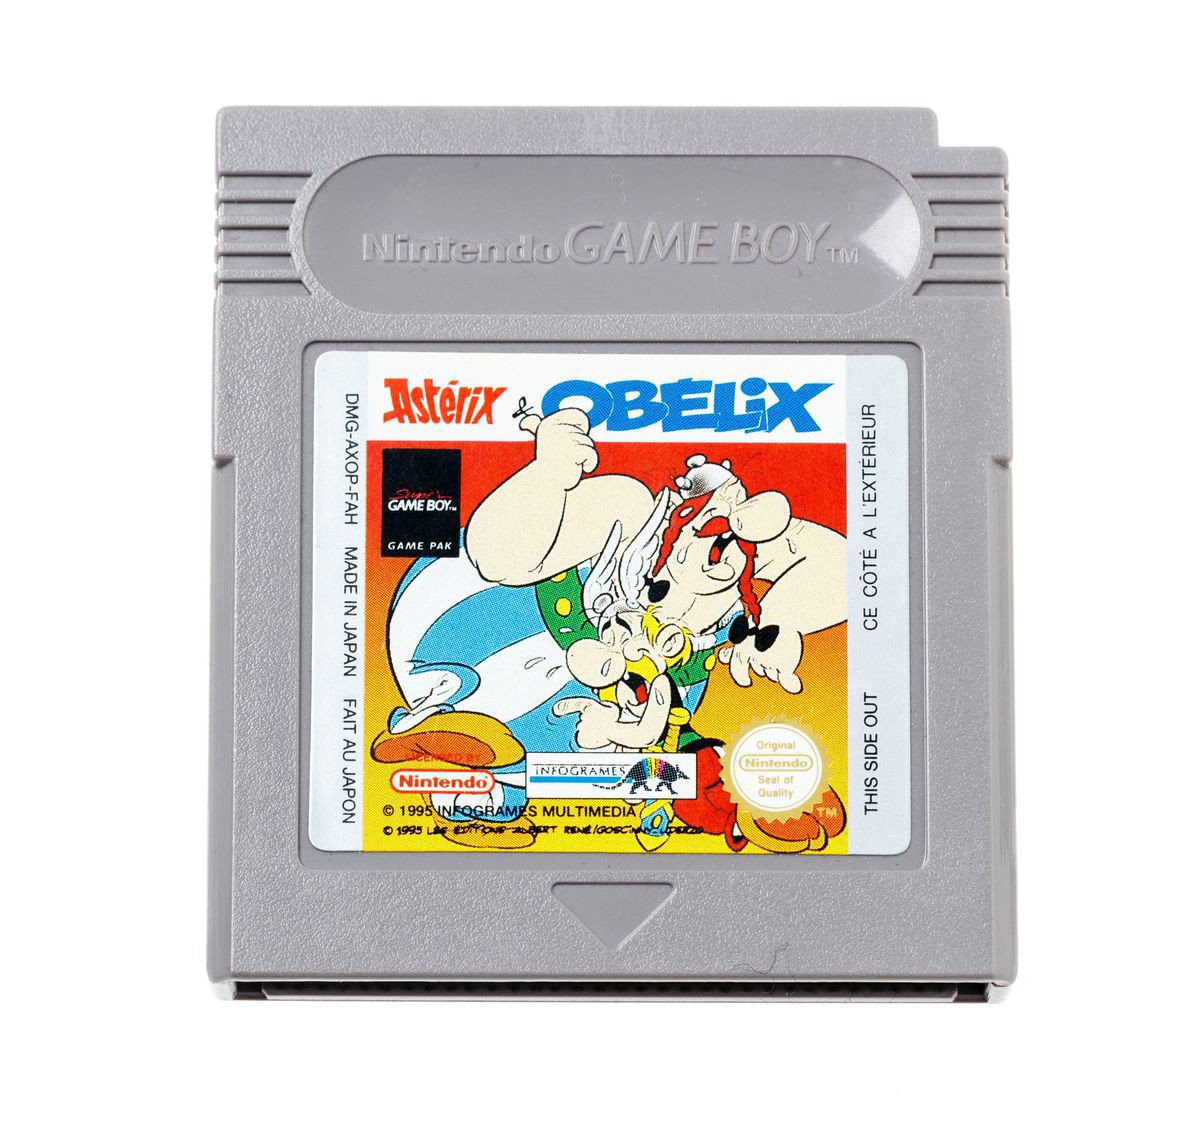 Asterix & Obelix (German & Francais) - Gameboy Classic Games